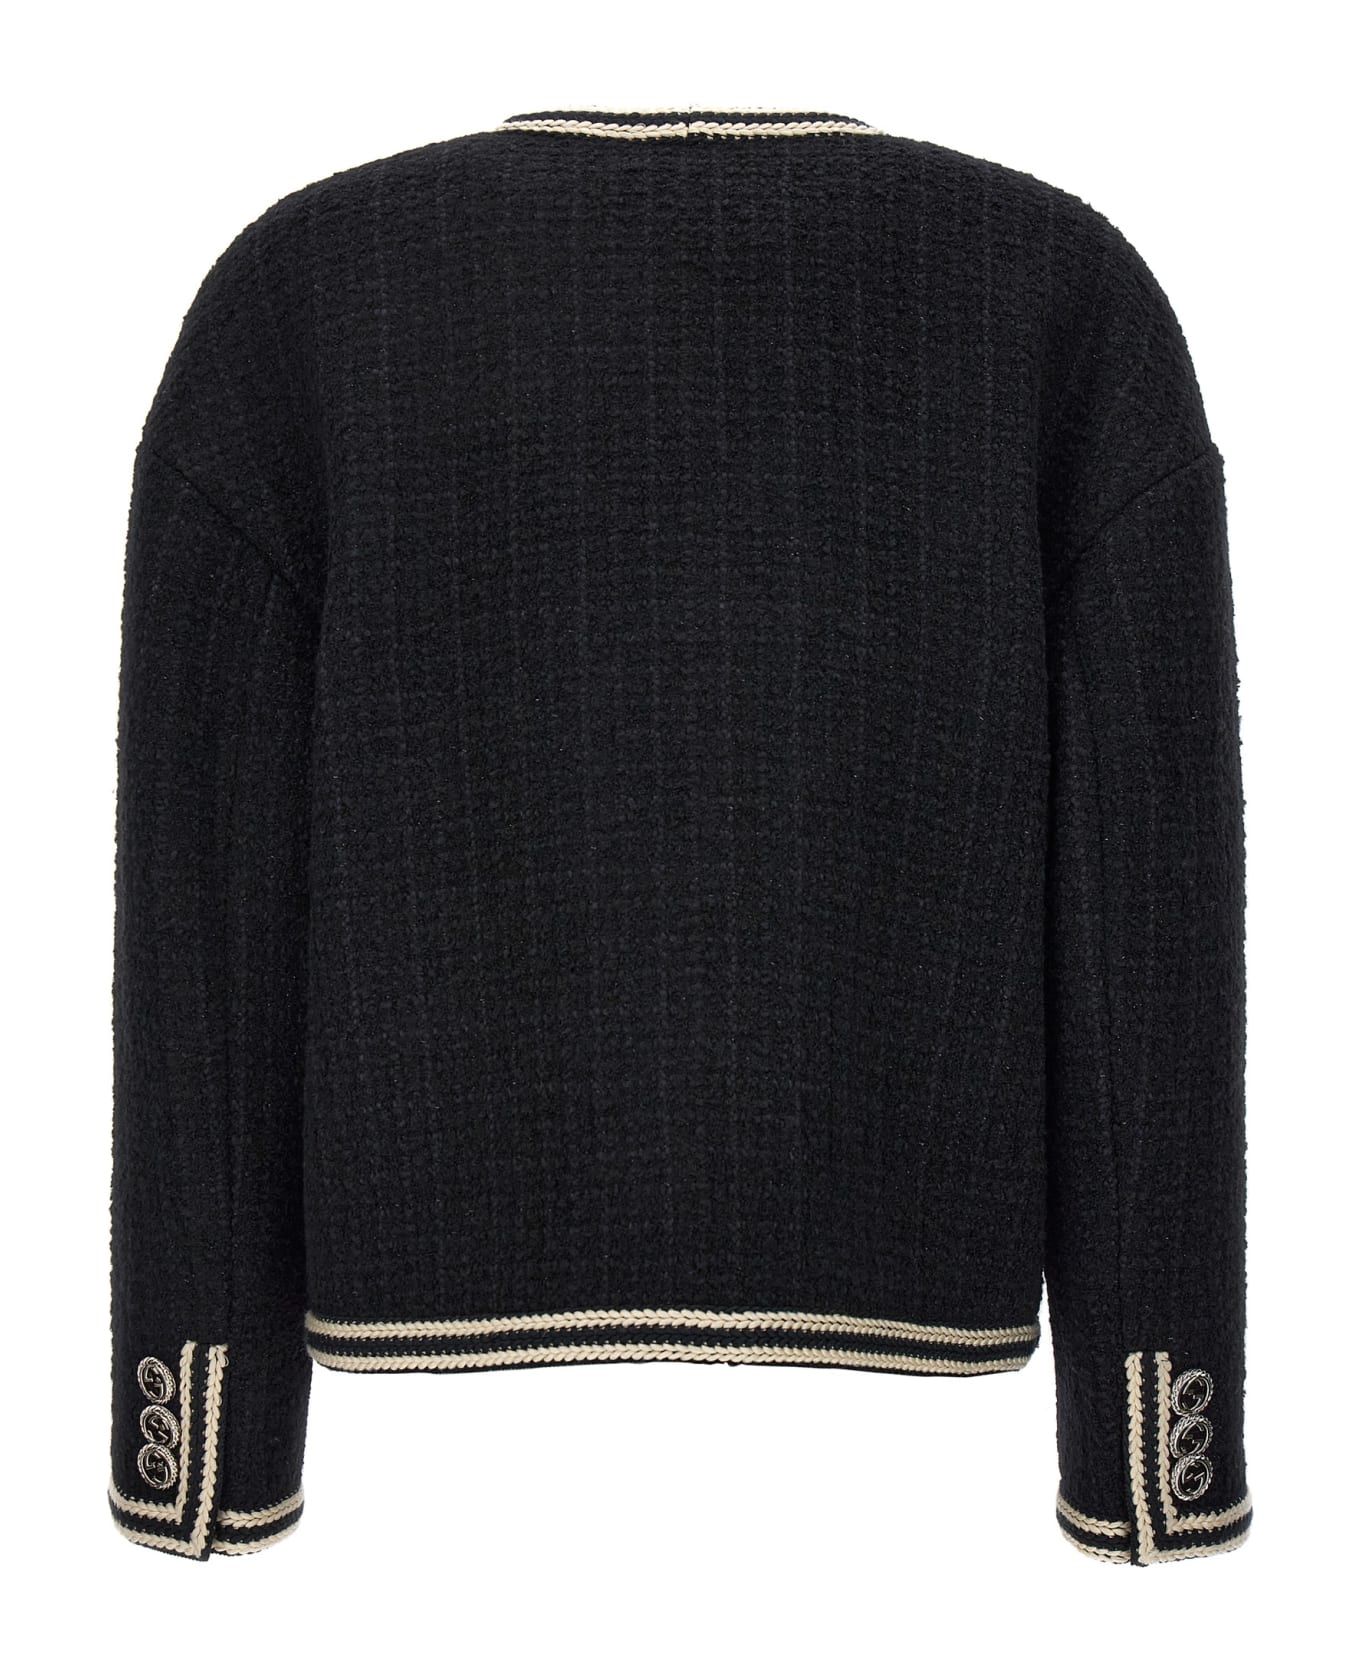 Gucci 'interlocking G' Pin Tweed Jacket - White/Black